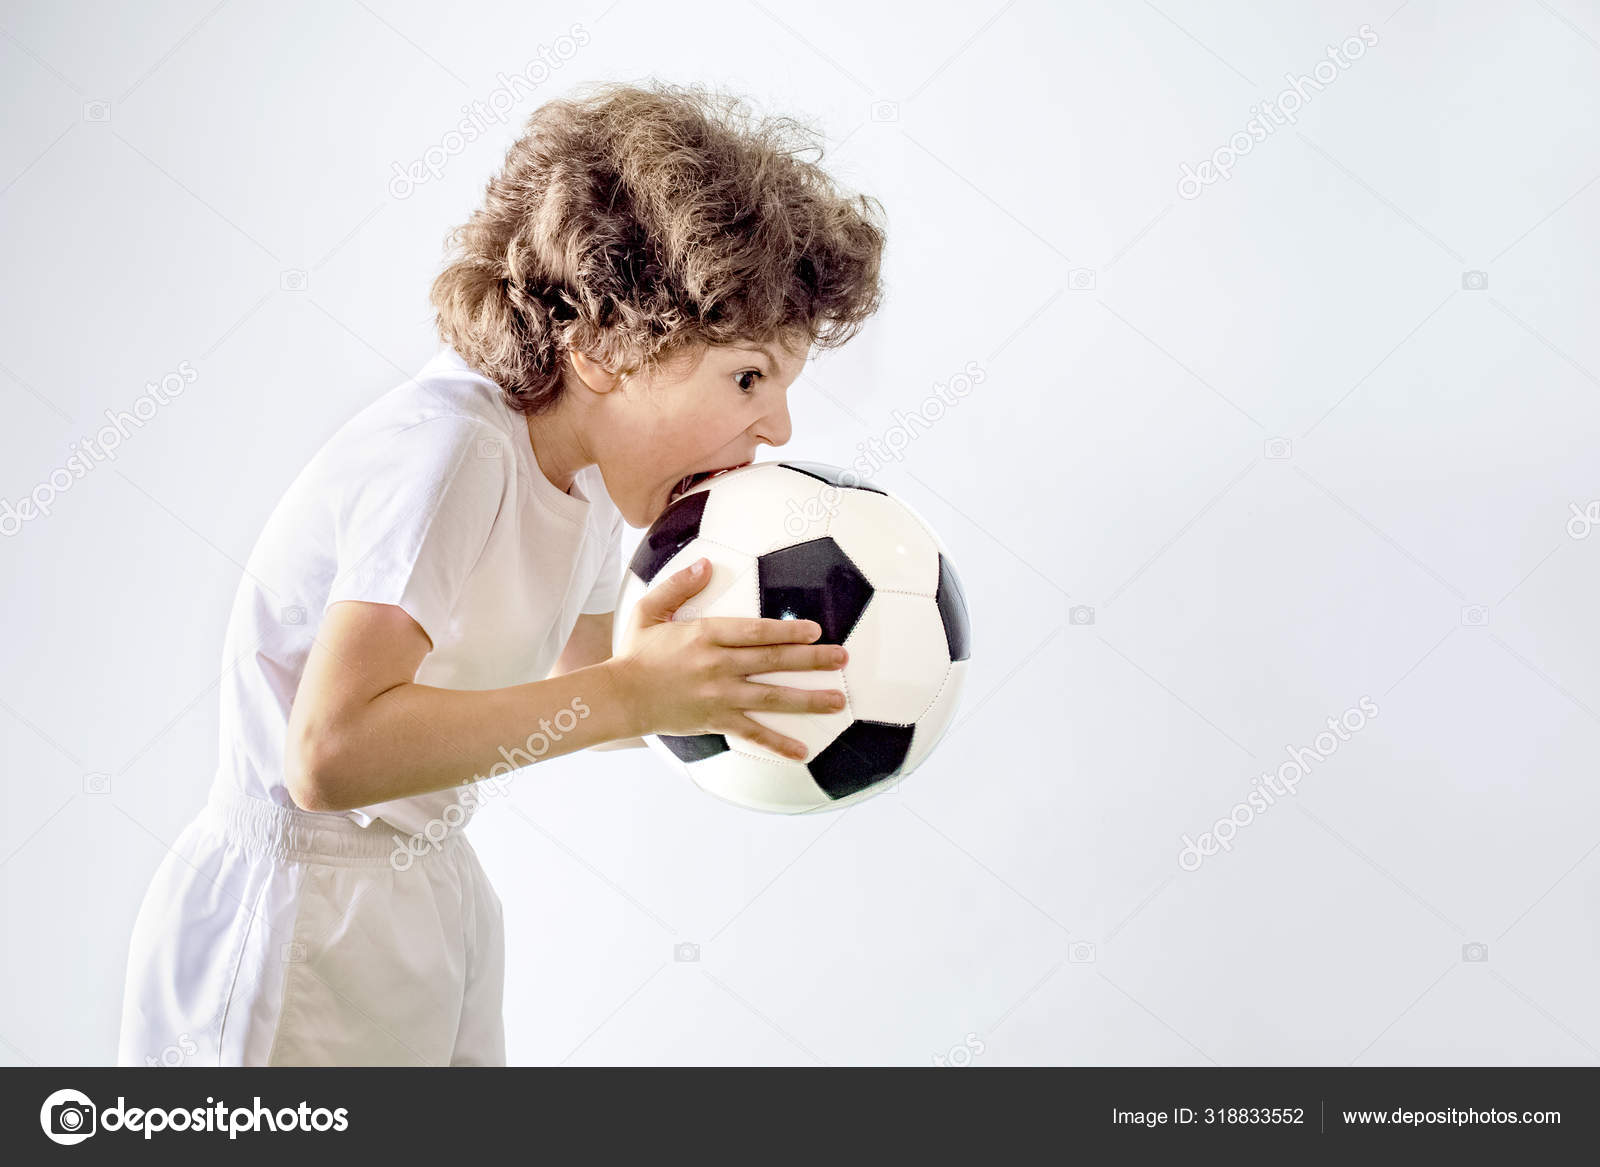 Bola de jogador de futebol e jovem feliz em jogar um divertido